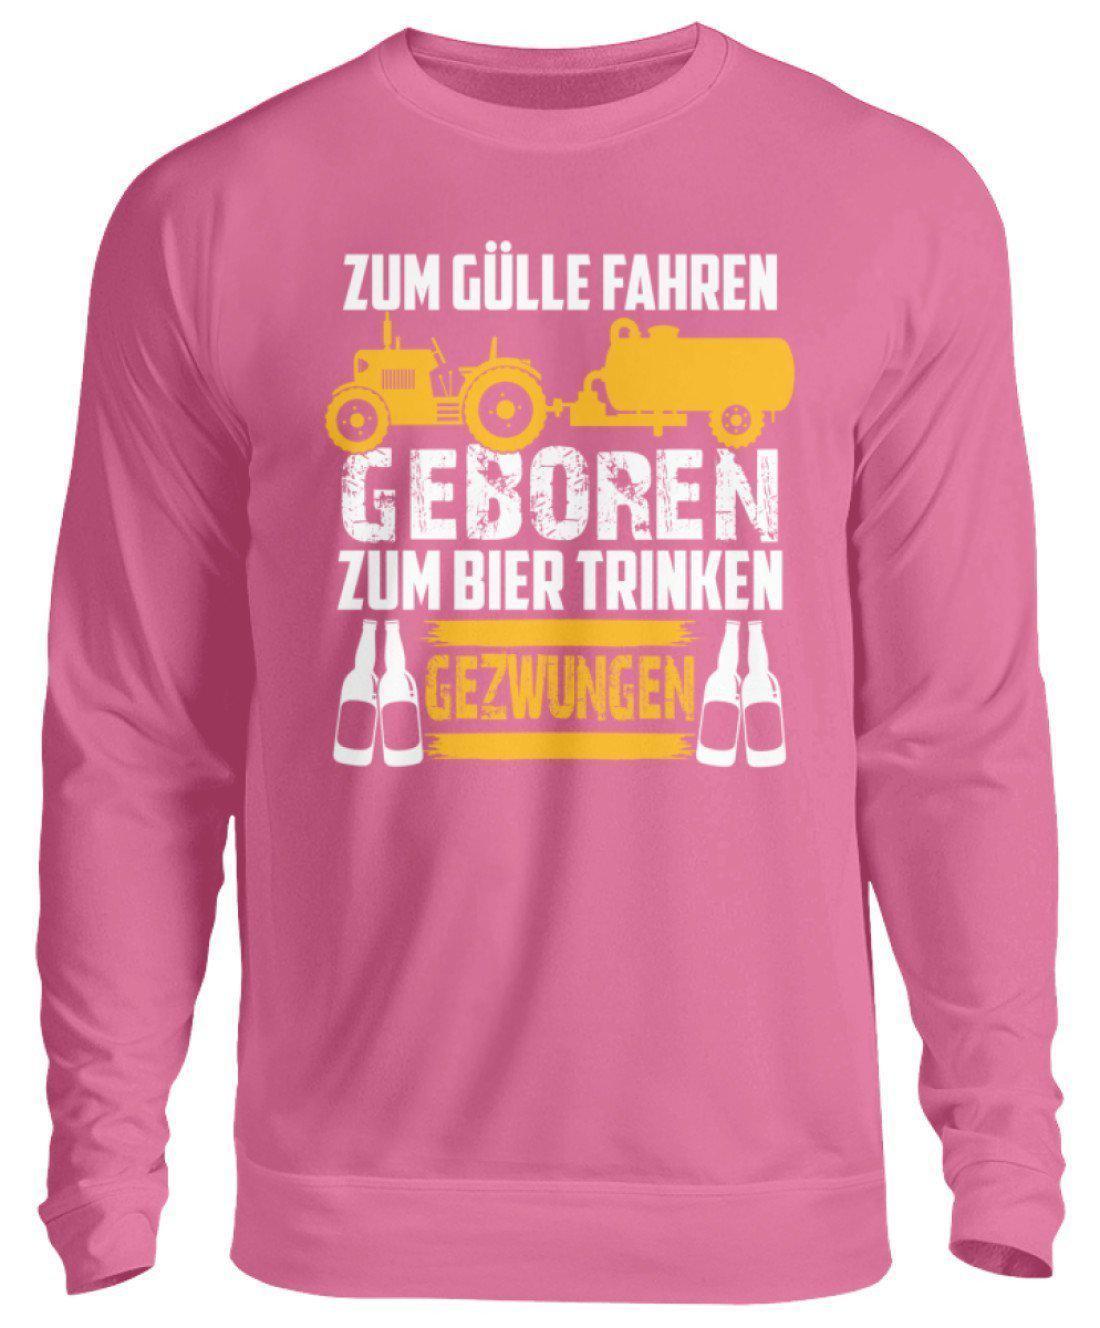 Zum Gülle fahren geboren · Unisex Sweatshirt Pullover-Unisex Sweatshirt-Candyfloss Pink-S-Agrarstarz